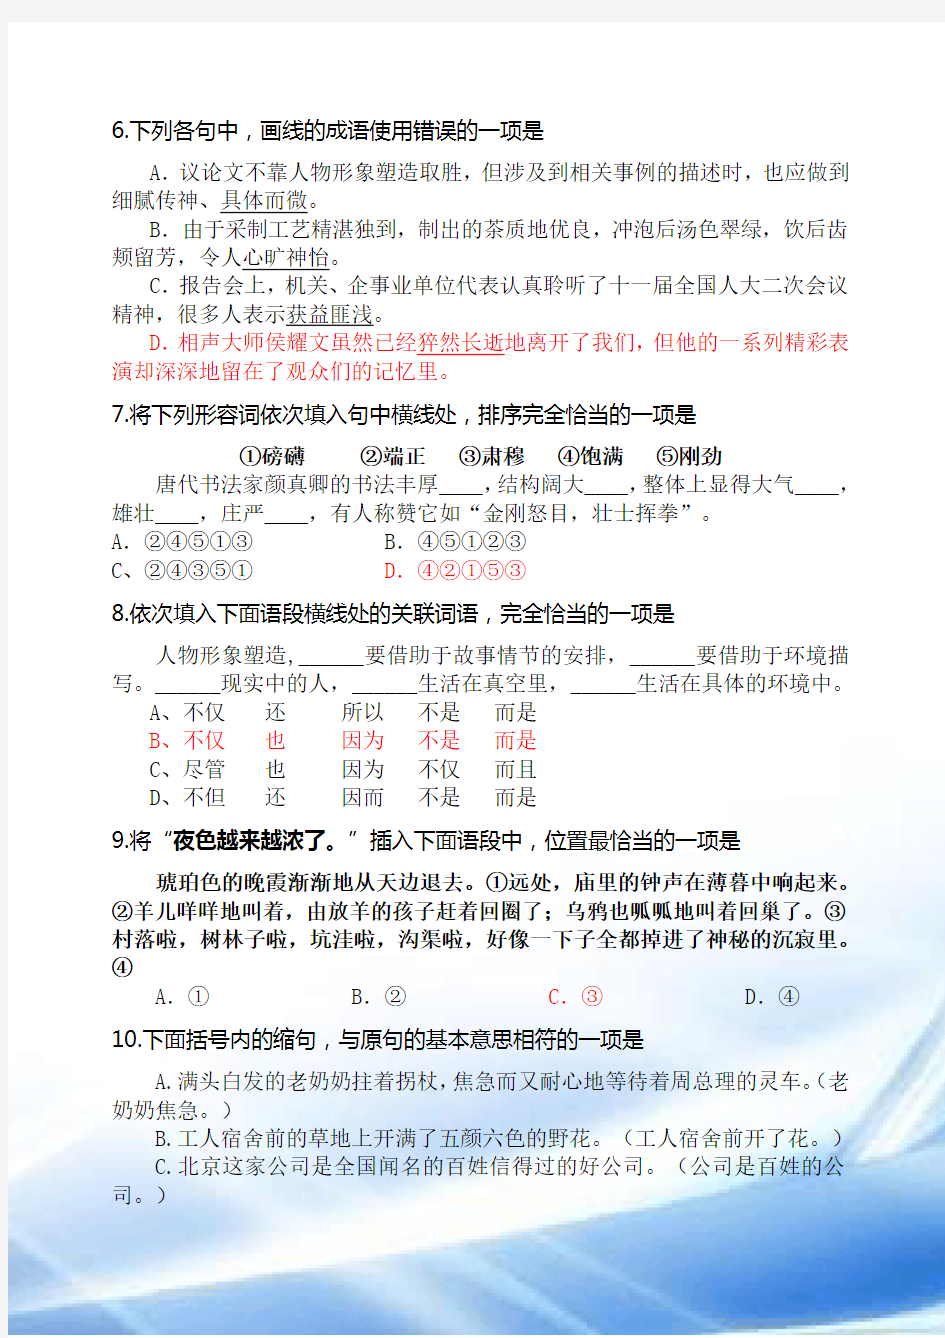 2017年汉语高考模拟试题含答案(重新整理)